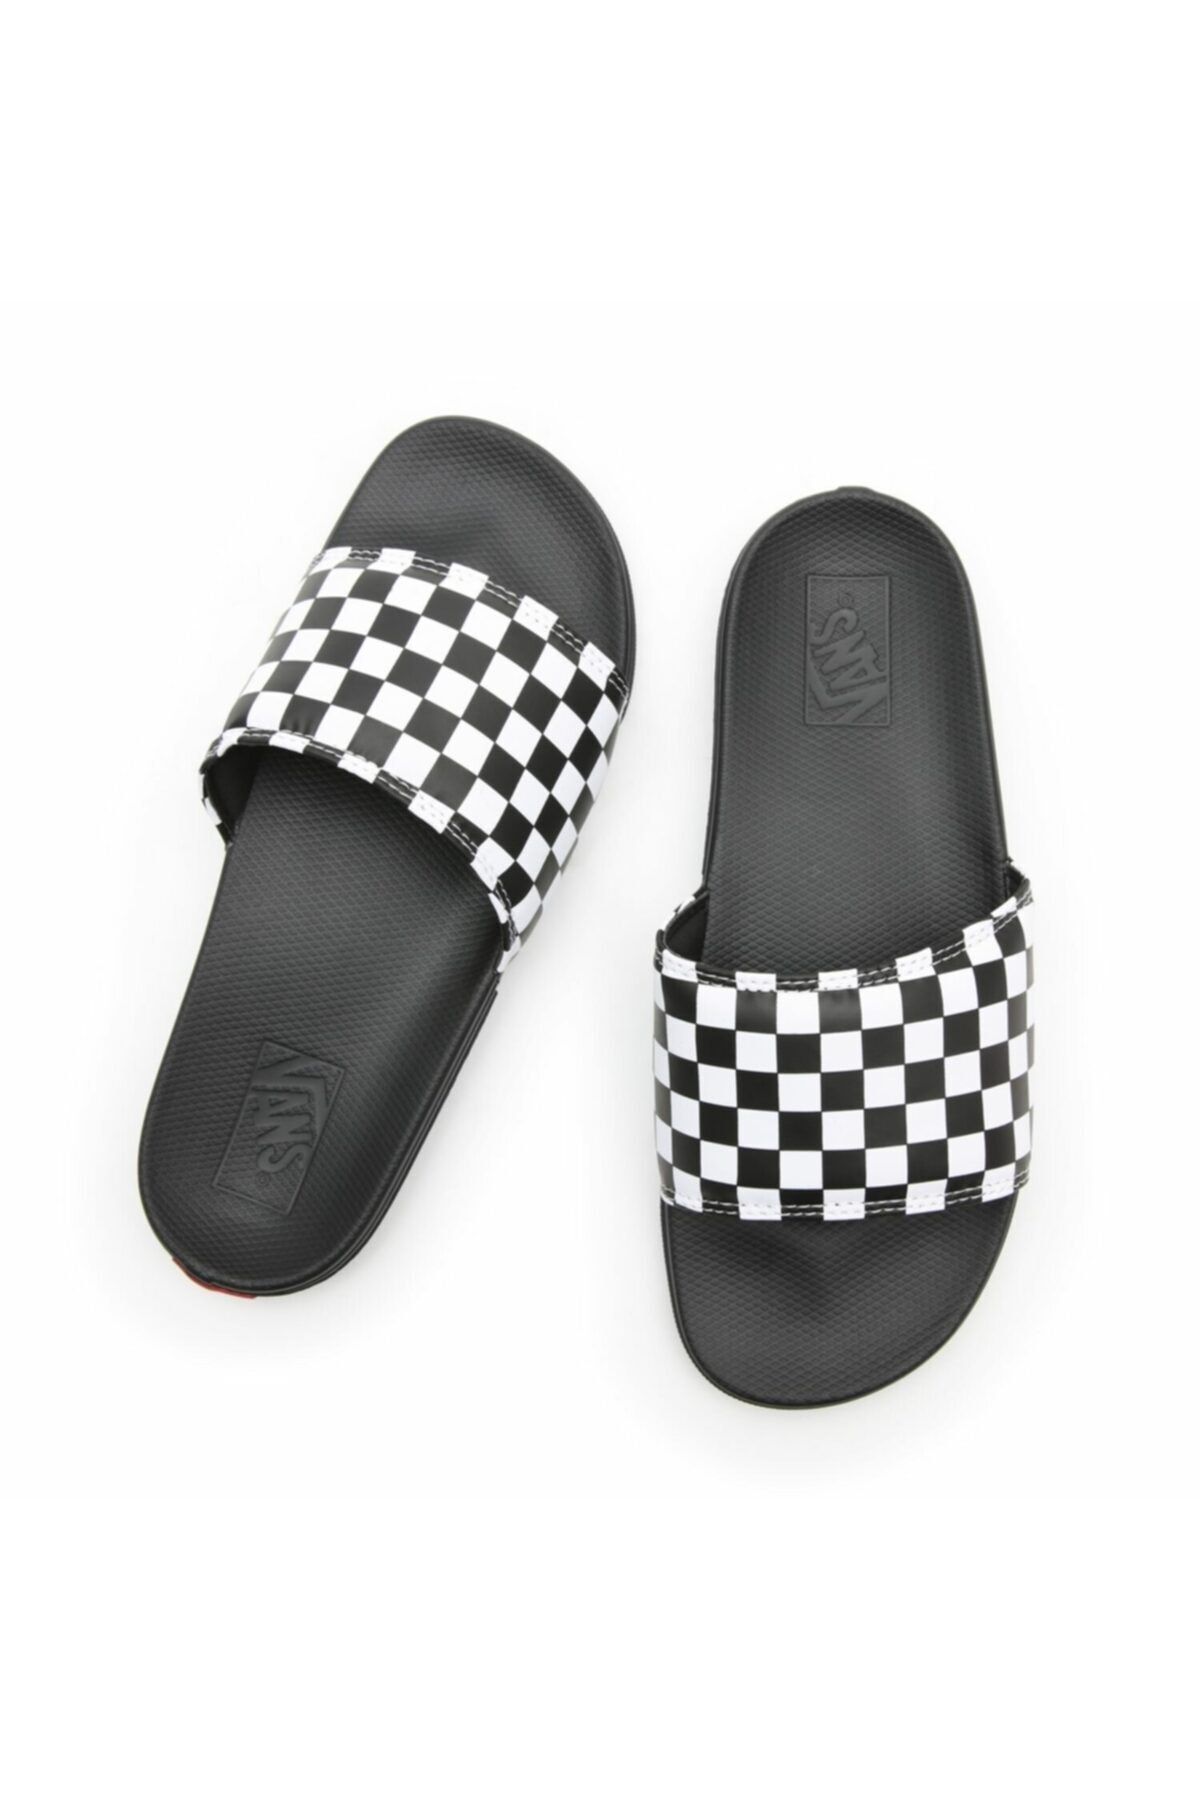 MIA Checker Slippers for Women in Black and White | GS1412401-BLK/WHT –  Glik's